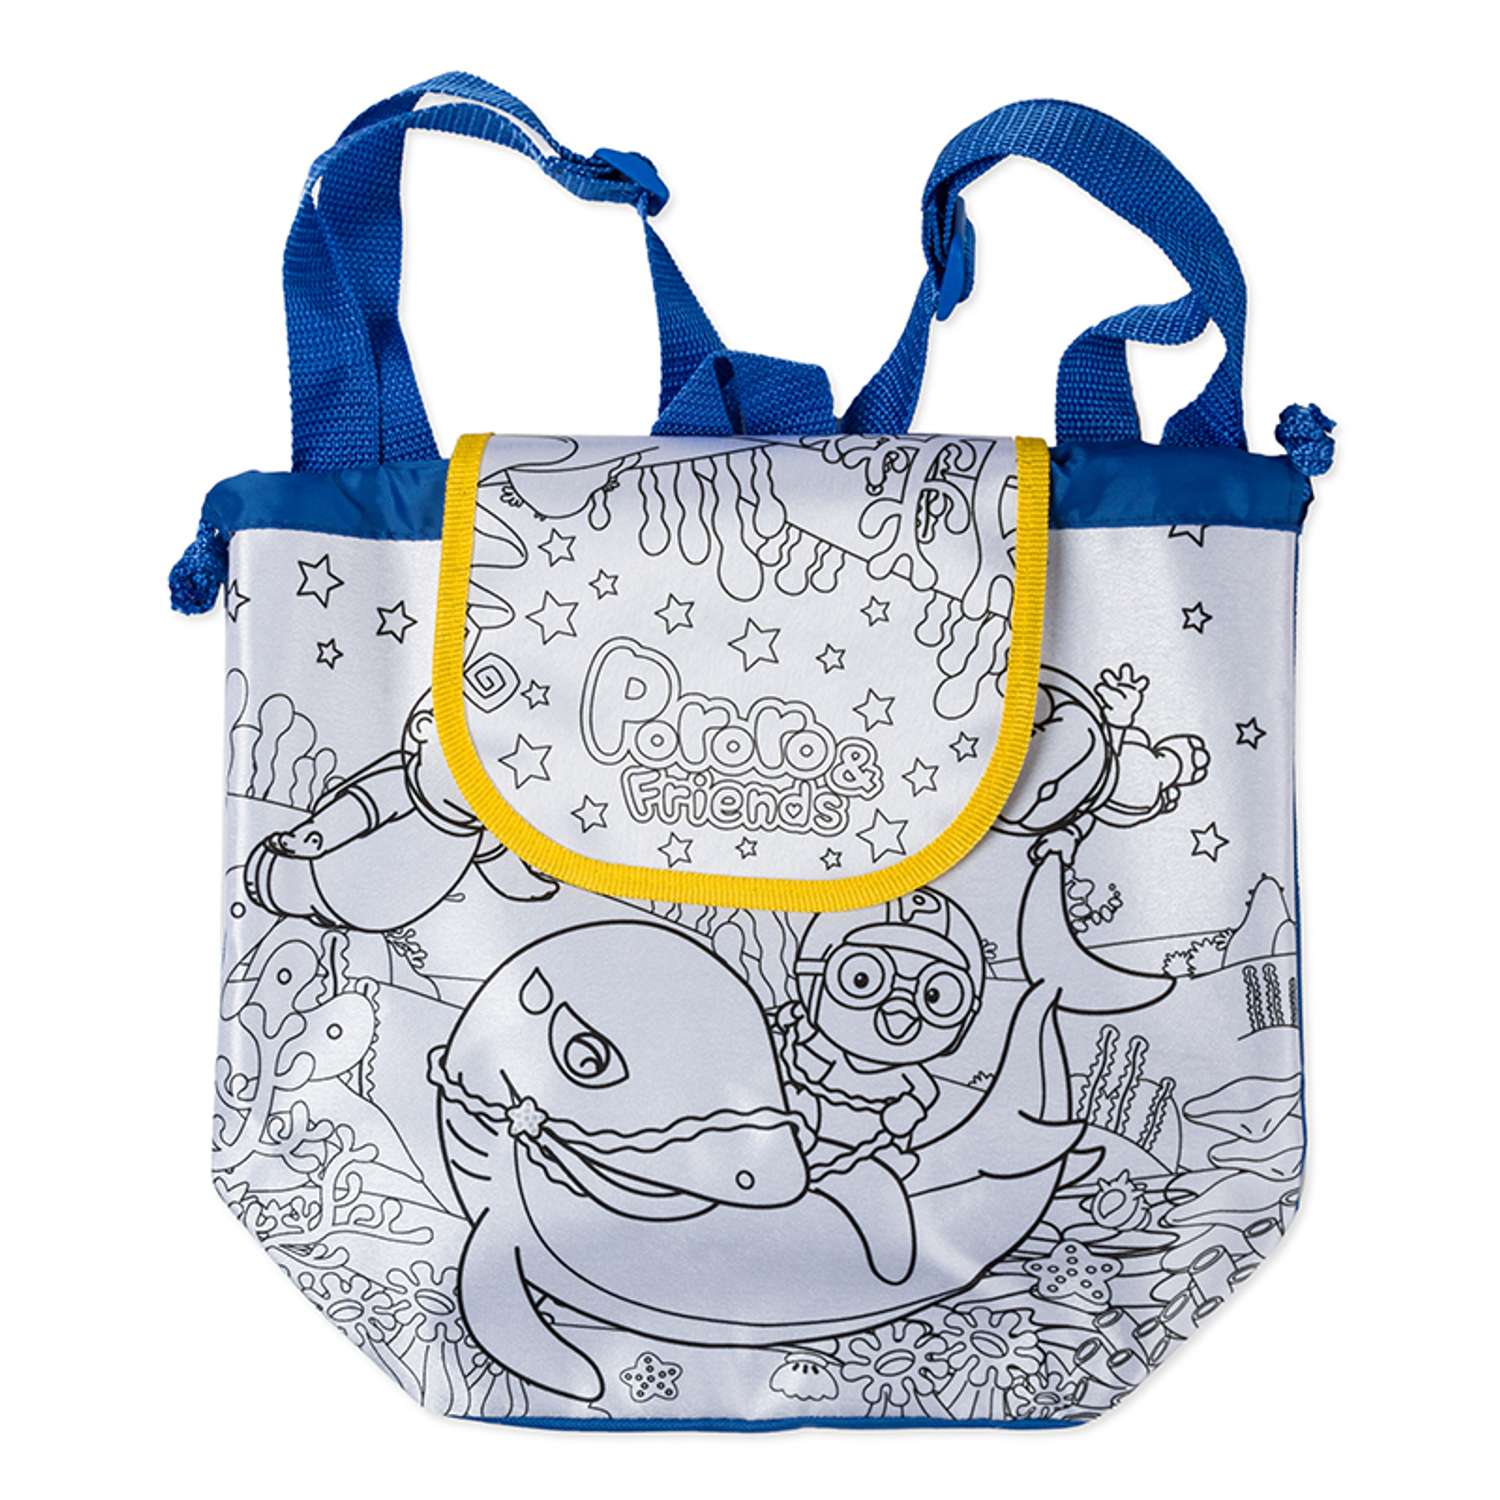 Сумка - рюкзак для раскрашивания Чудо-творчество Пороро (арт. 02229) - фото 3